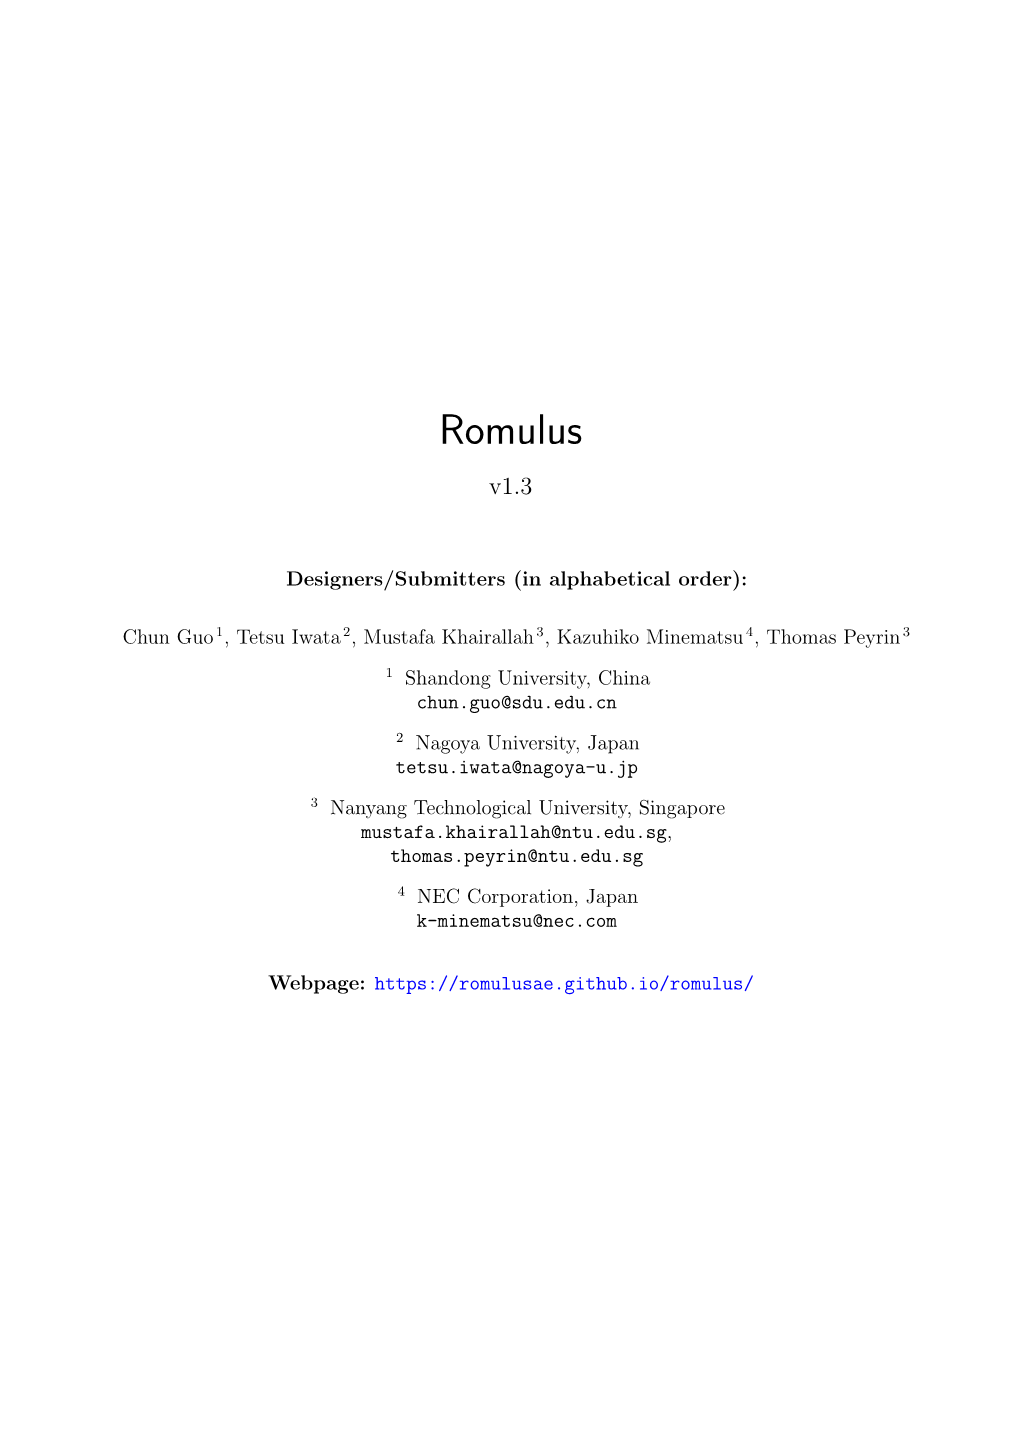 Romulus V1.3 Specification